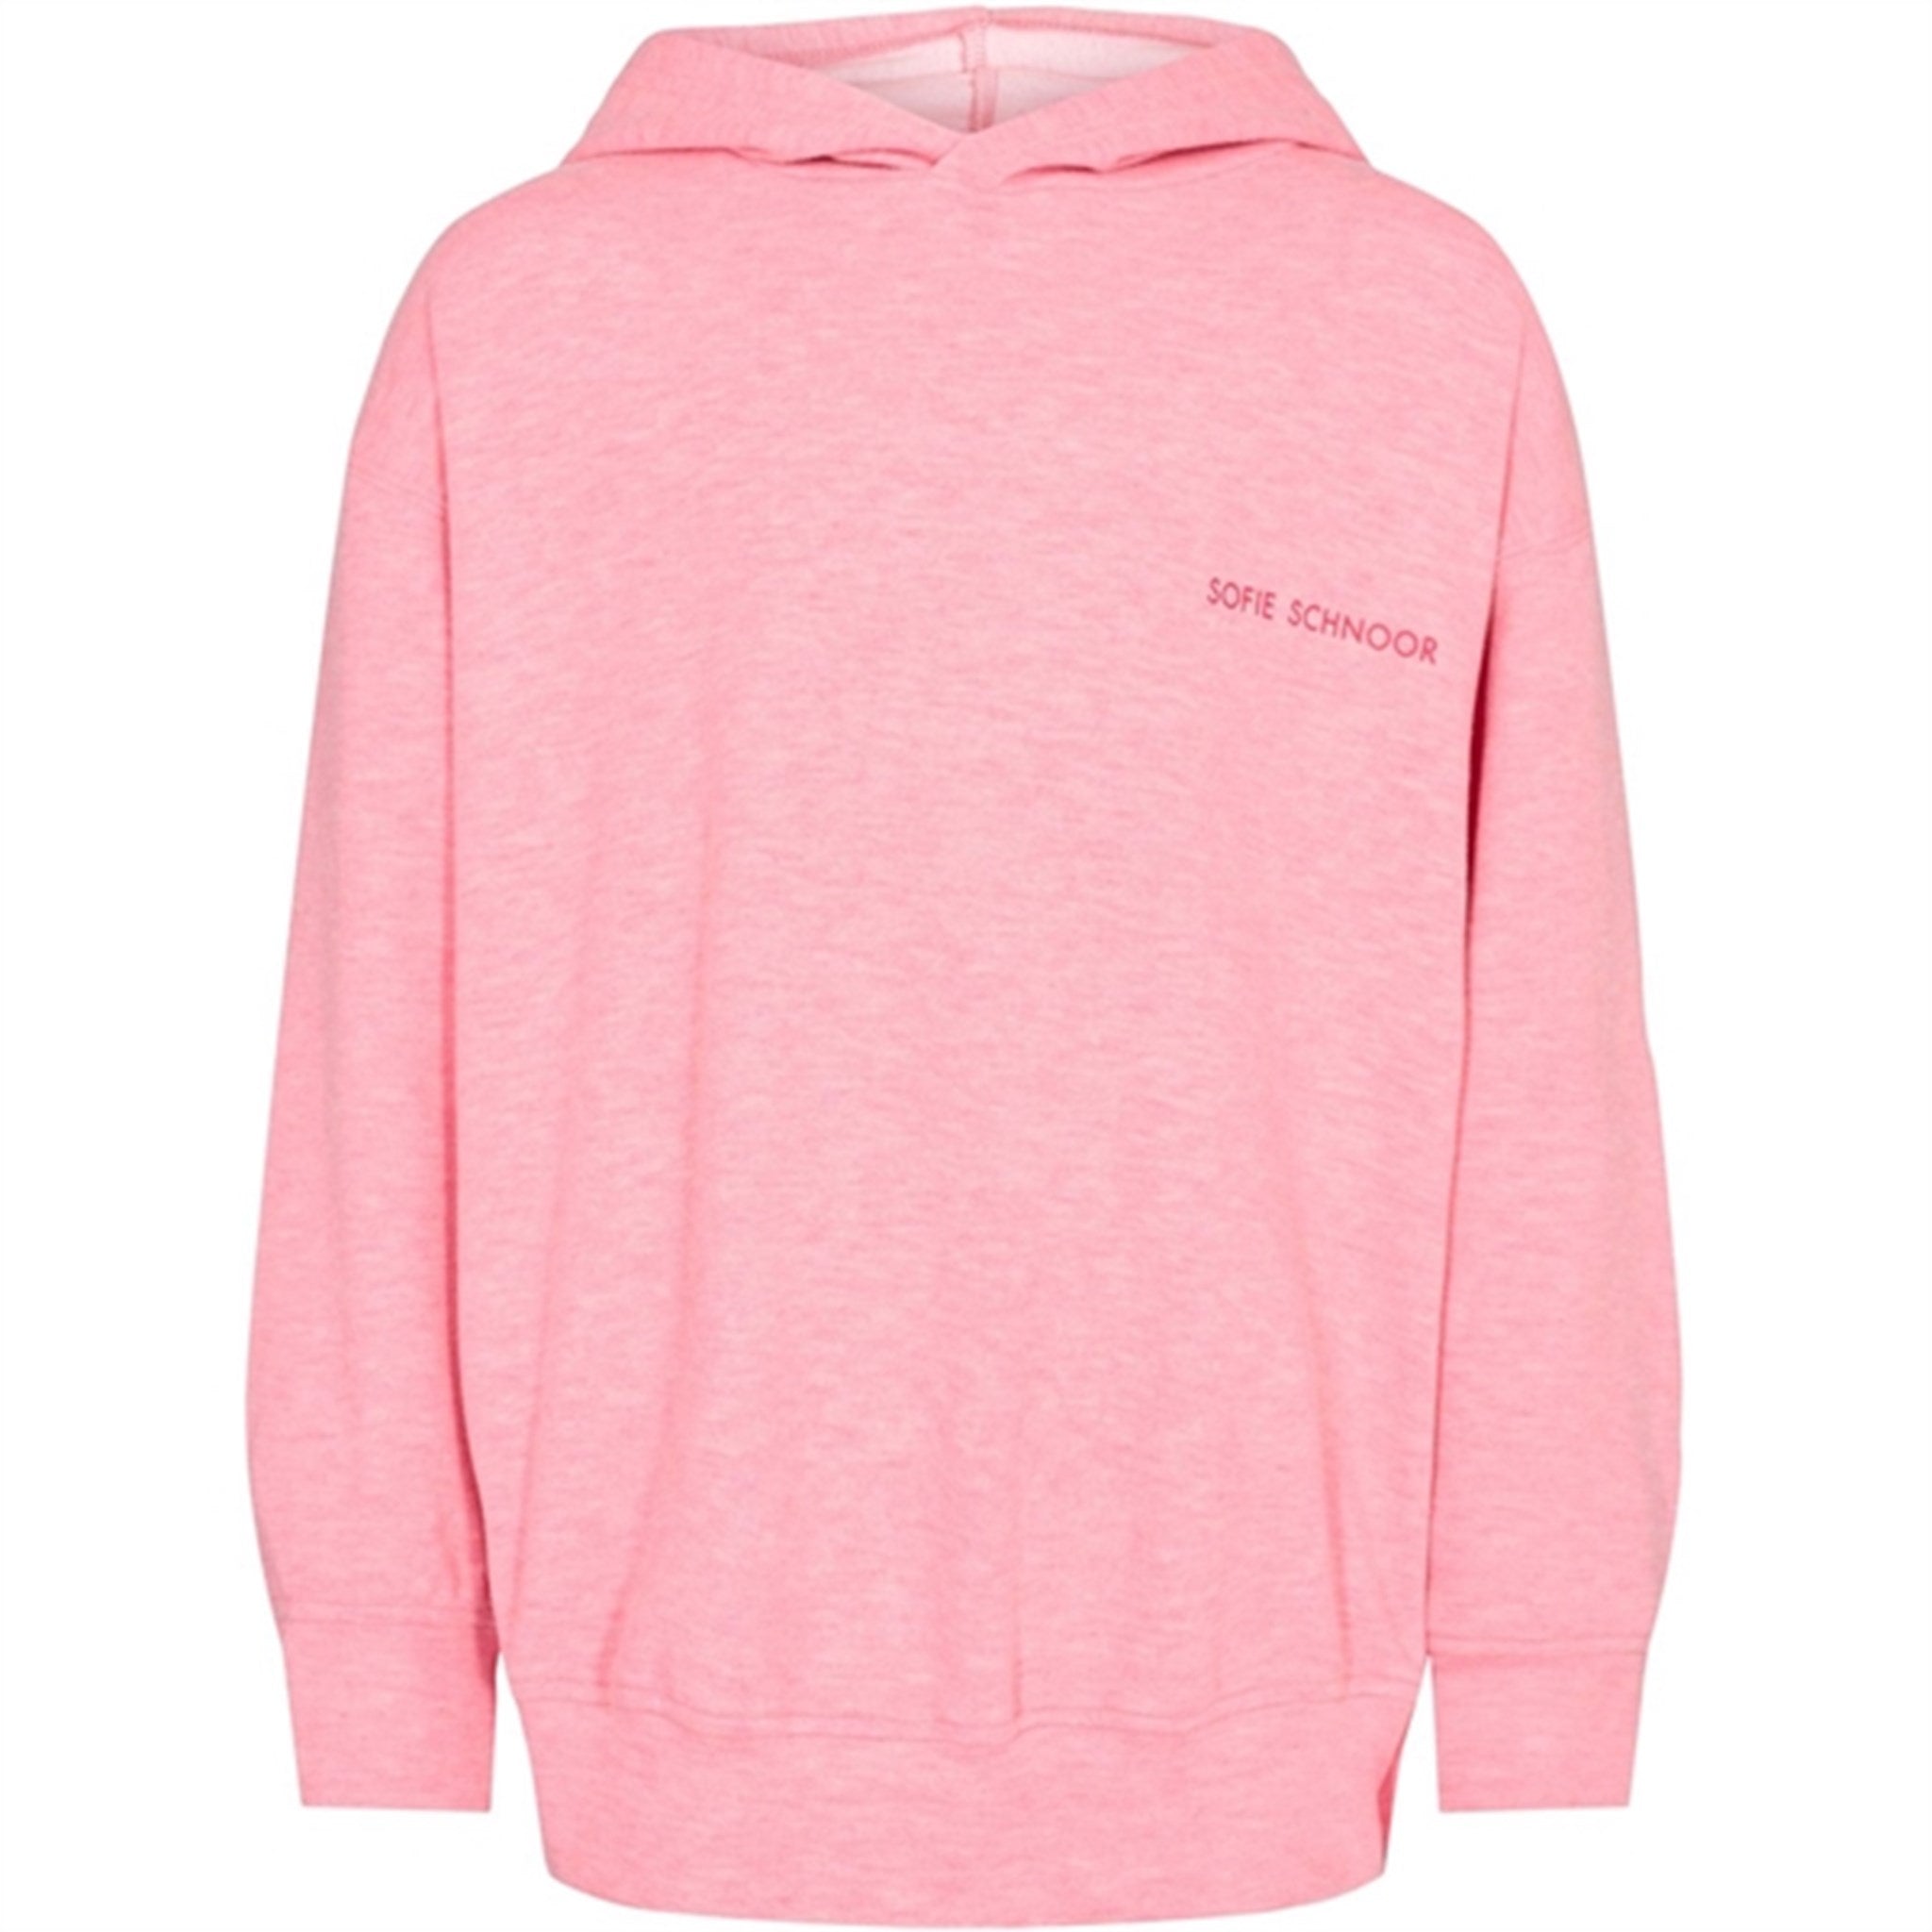 Sofie Schnoor Light Pink Sweatshirt